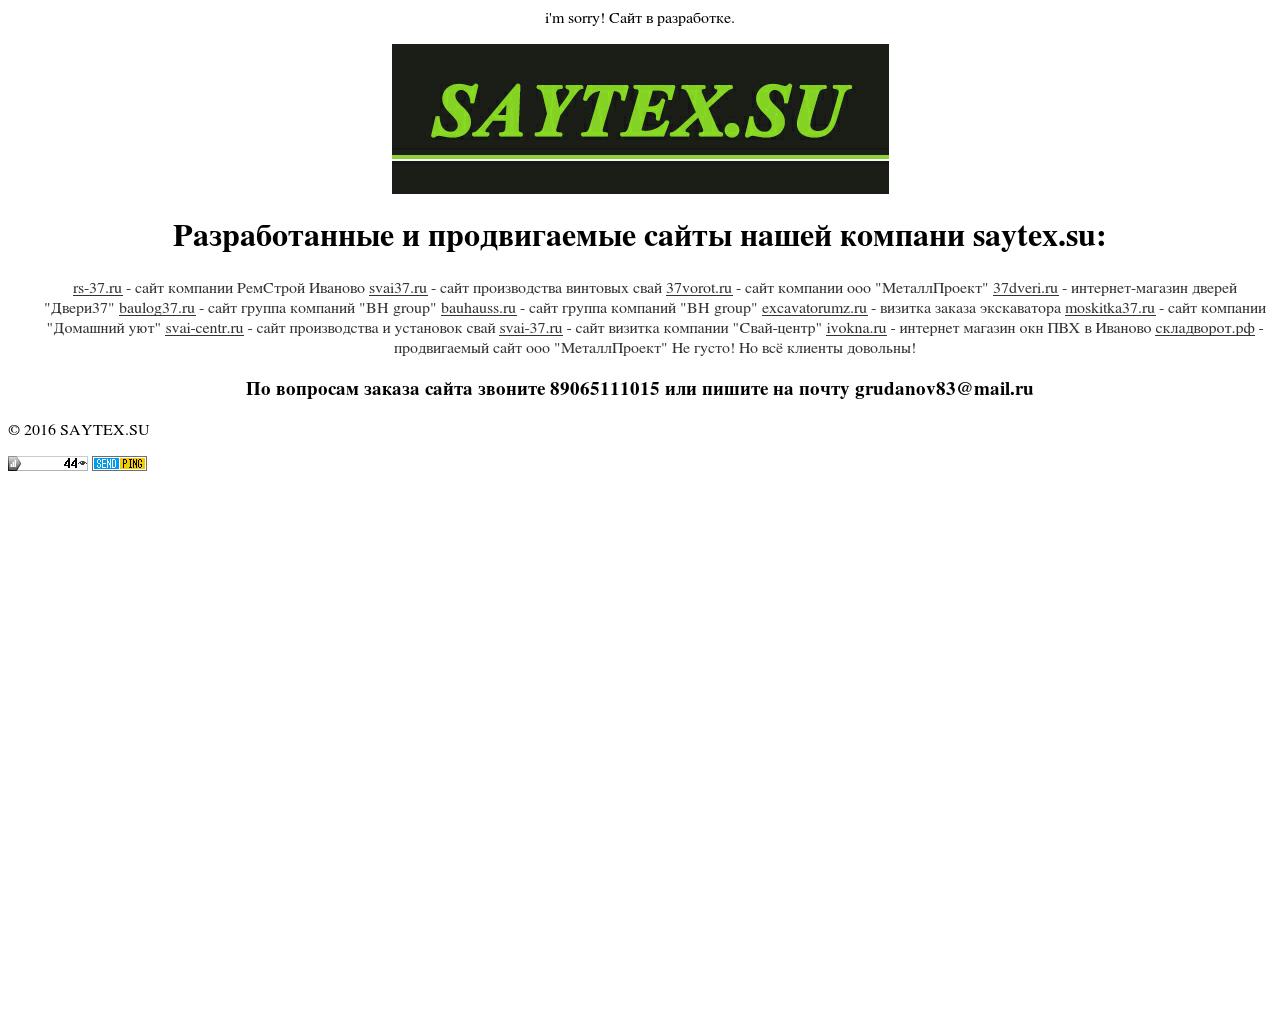 Изображение сайта saytex.su в разрешении 1280x1024